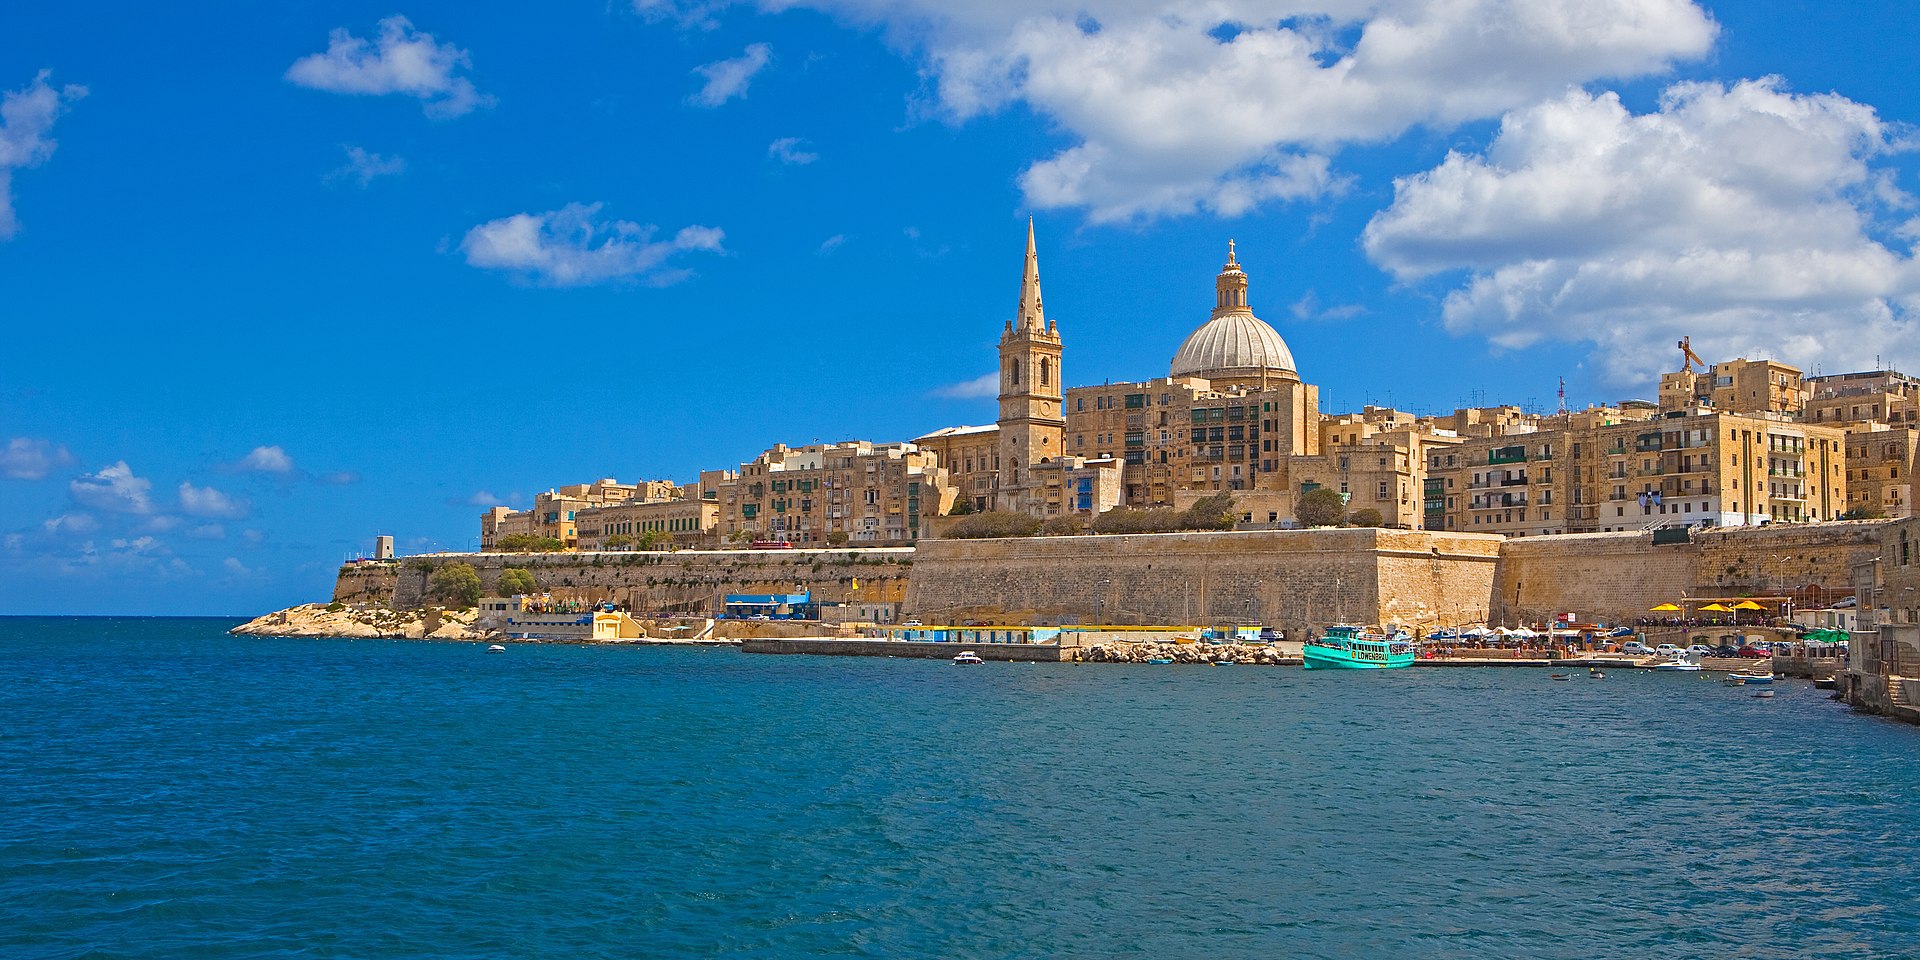 Valletta is the capital city of Malta